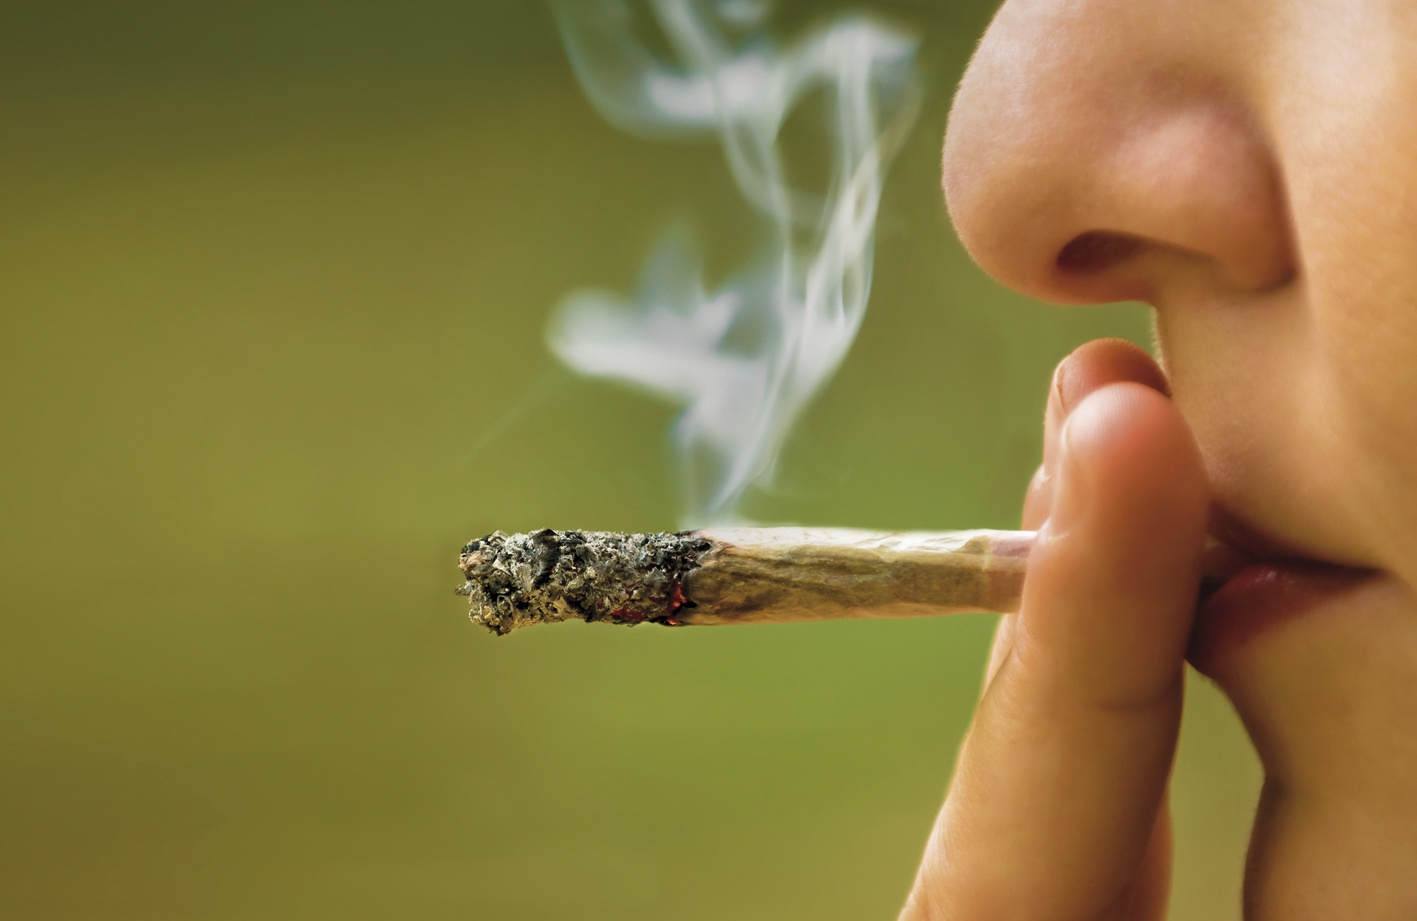 Kouření marihuany zvyšuje riziko sebevraždy, tvrdí nová studie - Deník.cz